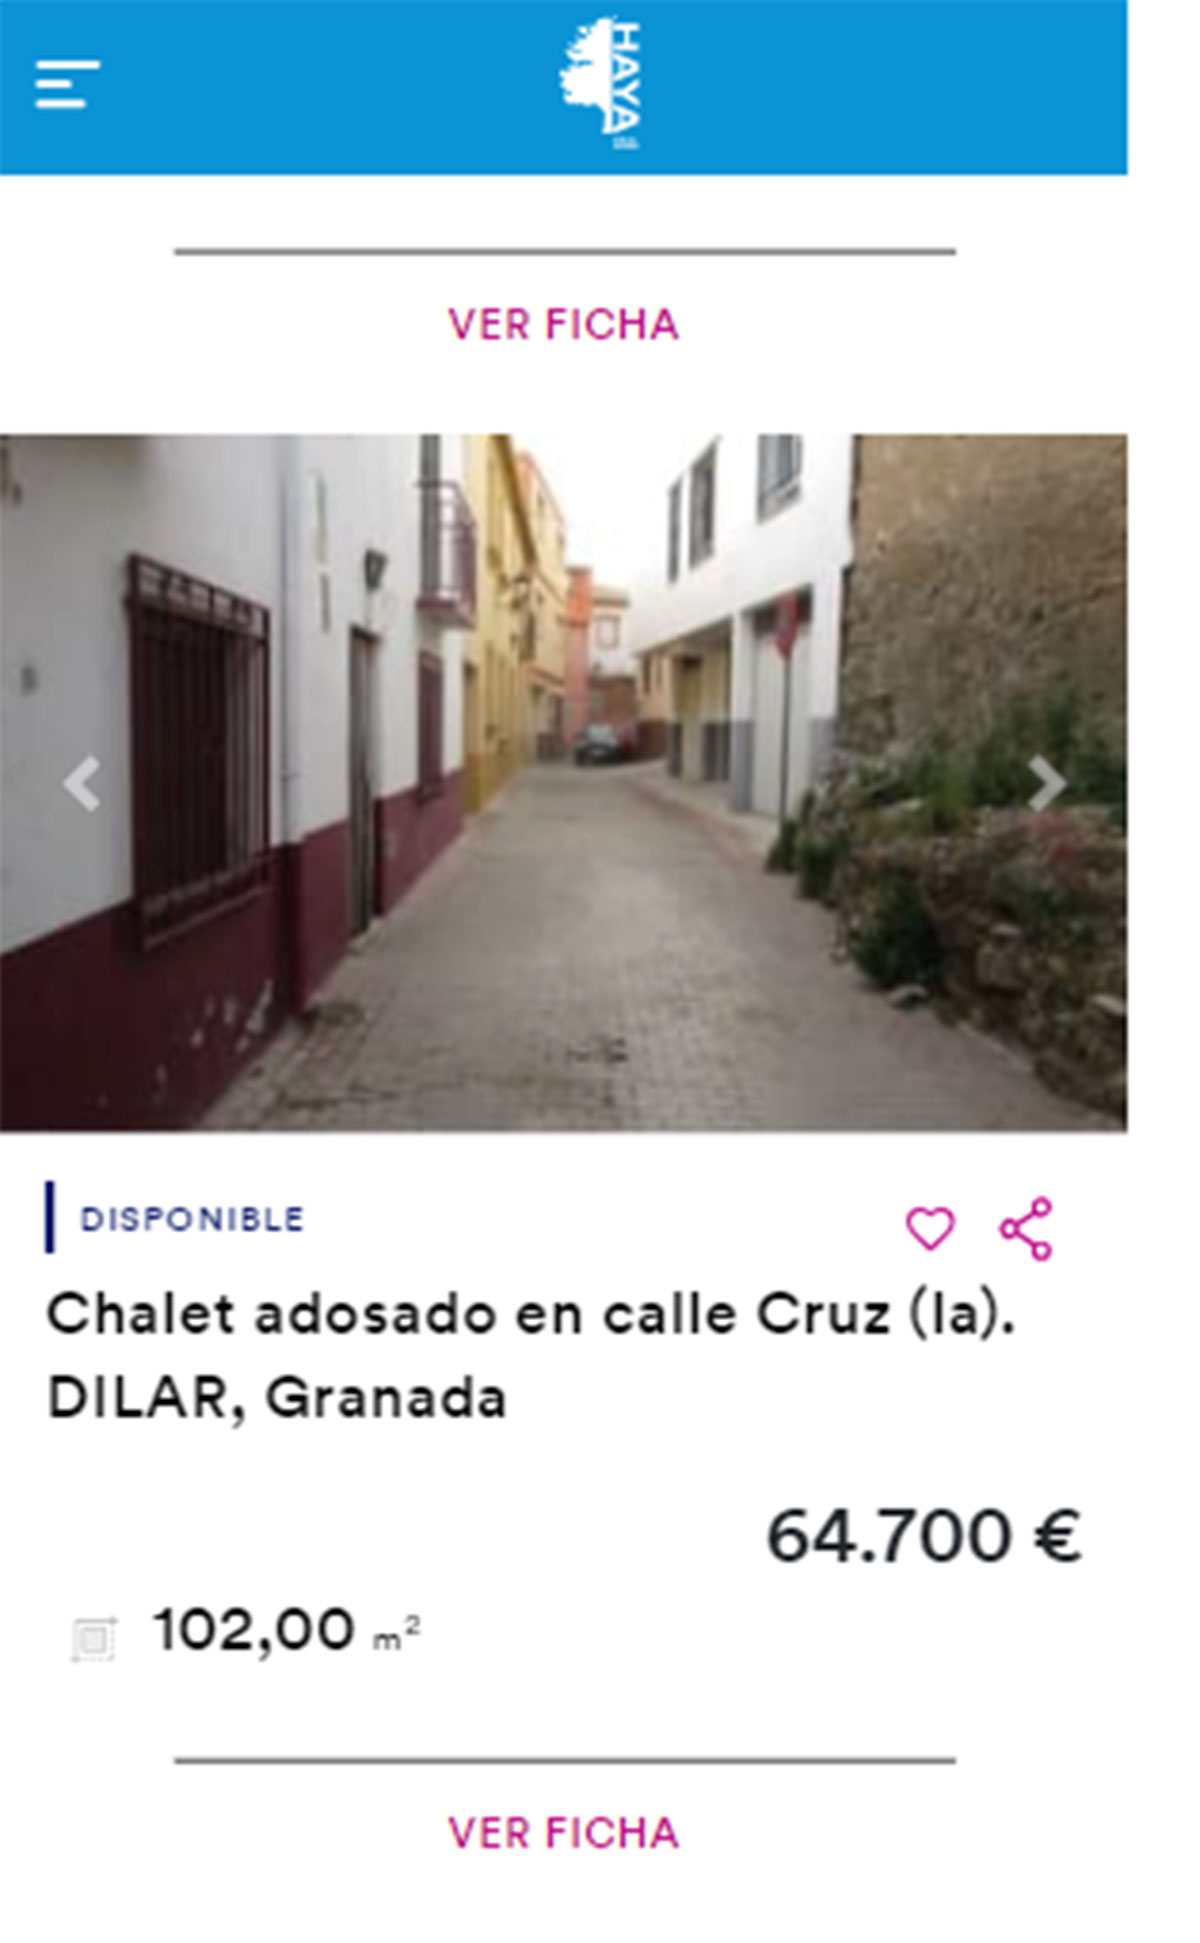 Chalet adosado en venta por 64.000 euros